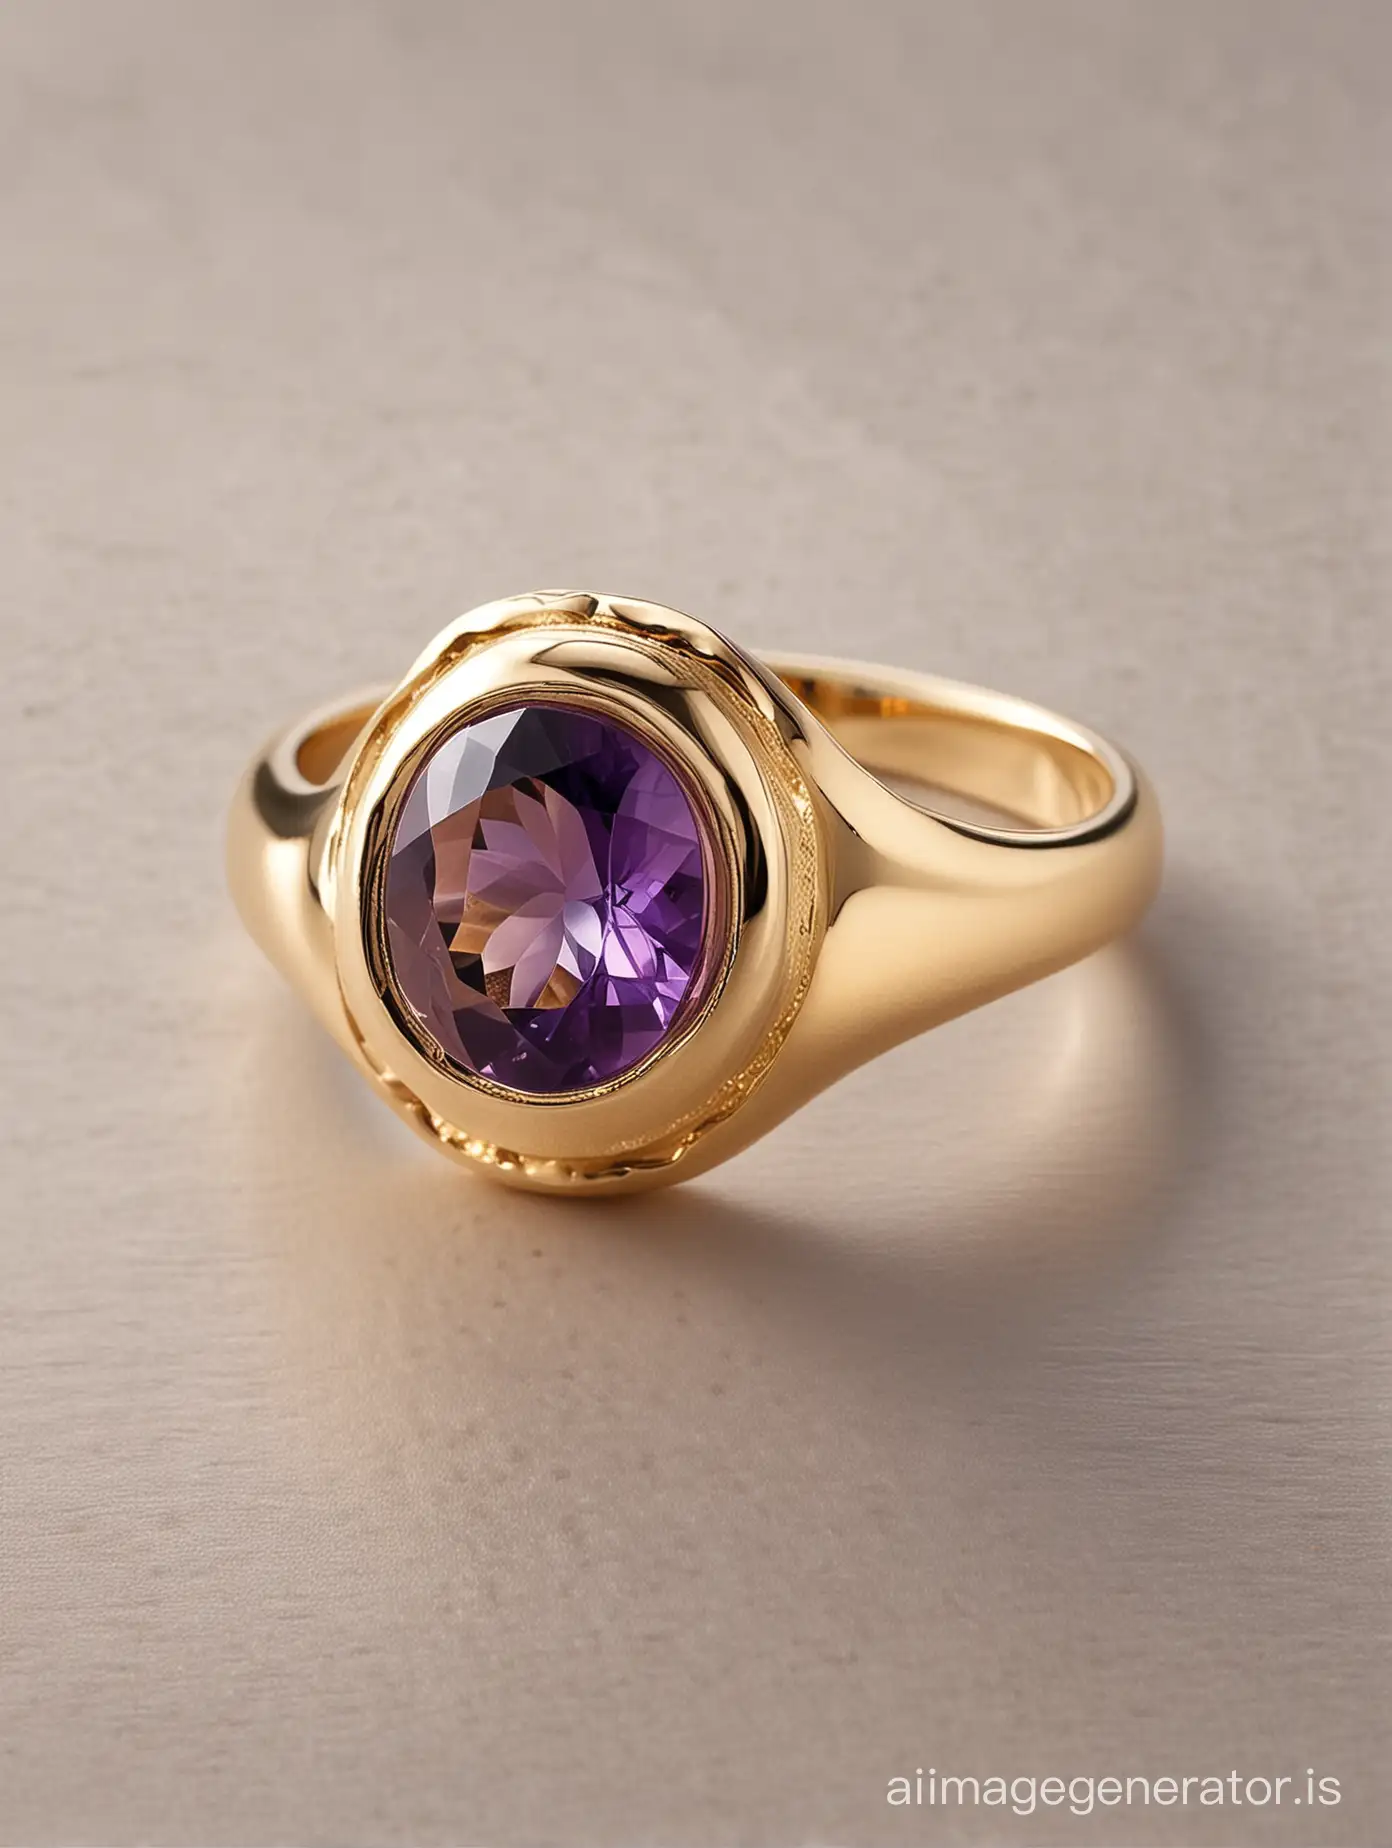 Elegant-Classic-Signet-Ring-with-Amethyst-Gemstone